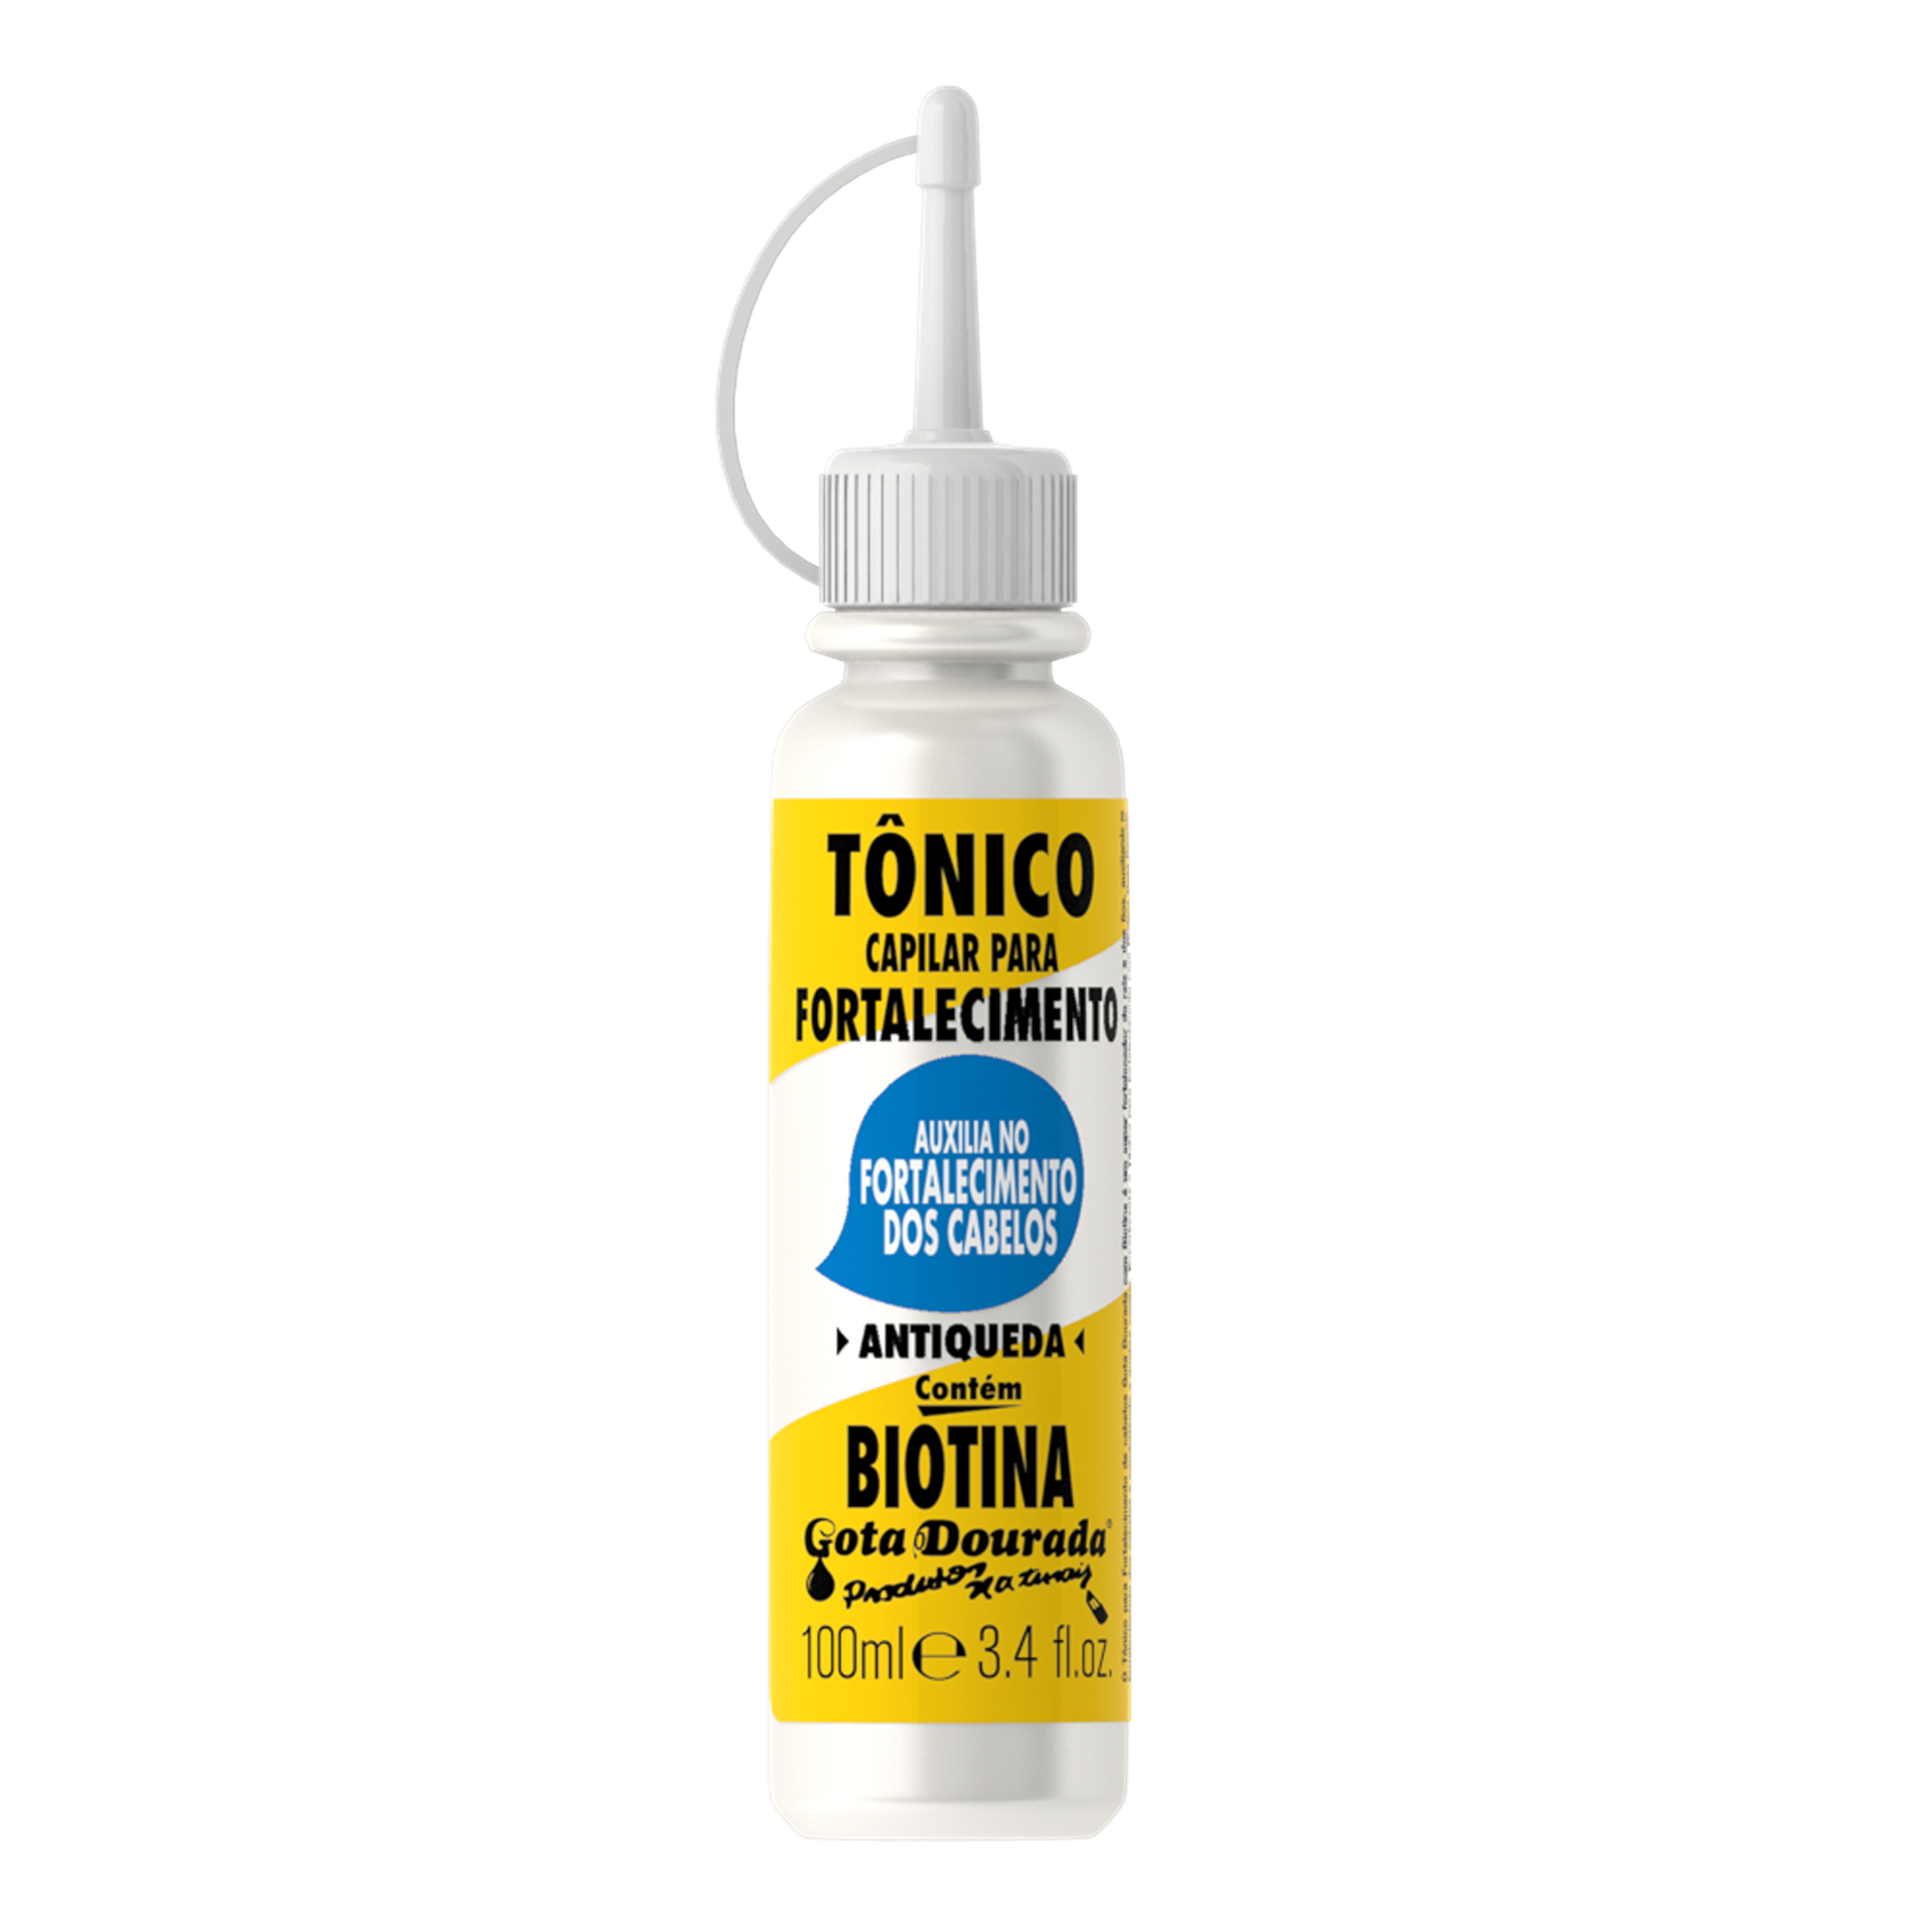 Tónico Biotina 100ml - Gota Dourada | Armazém da Cosmética